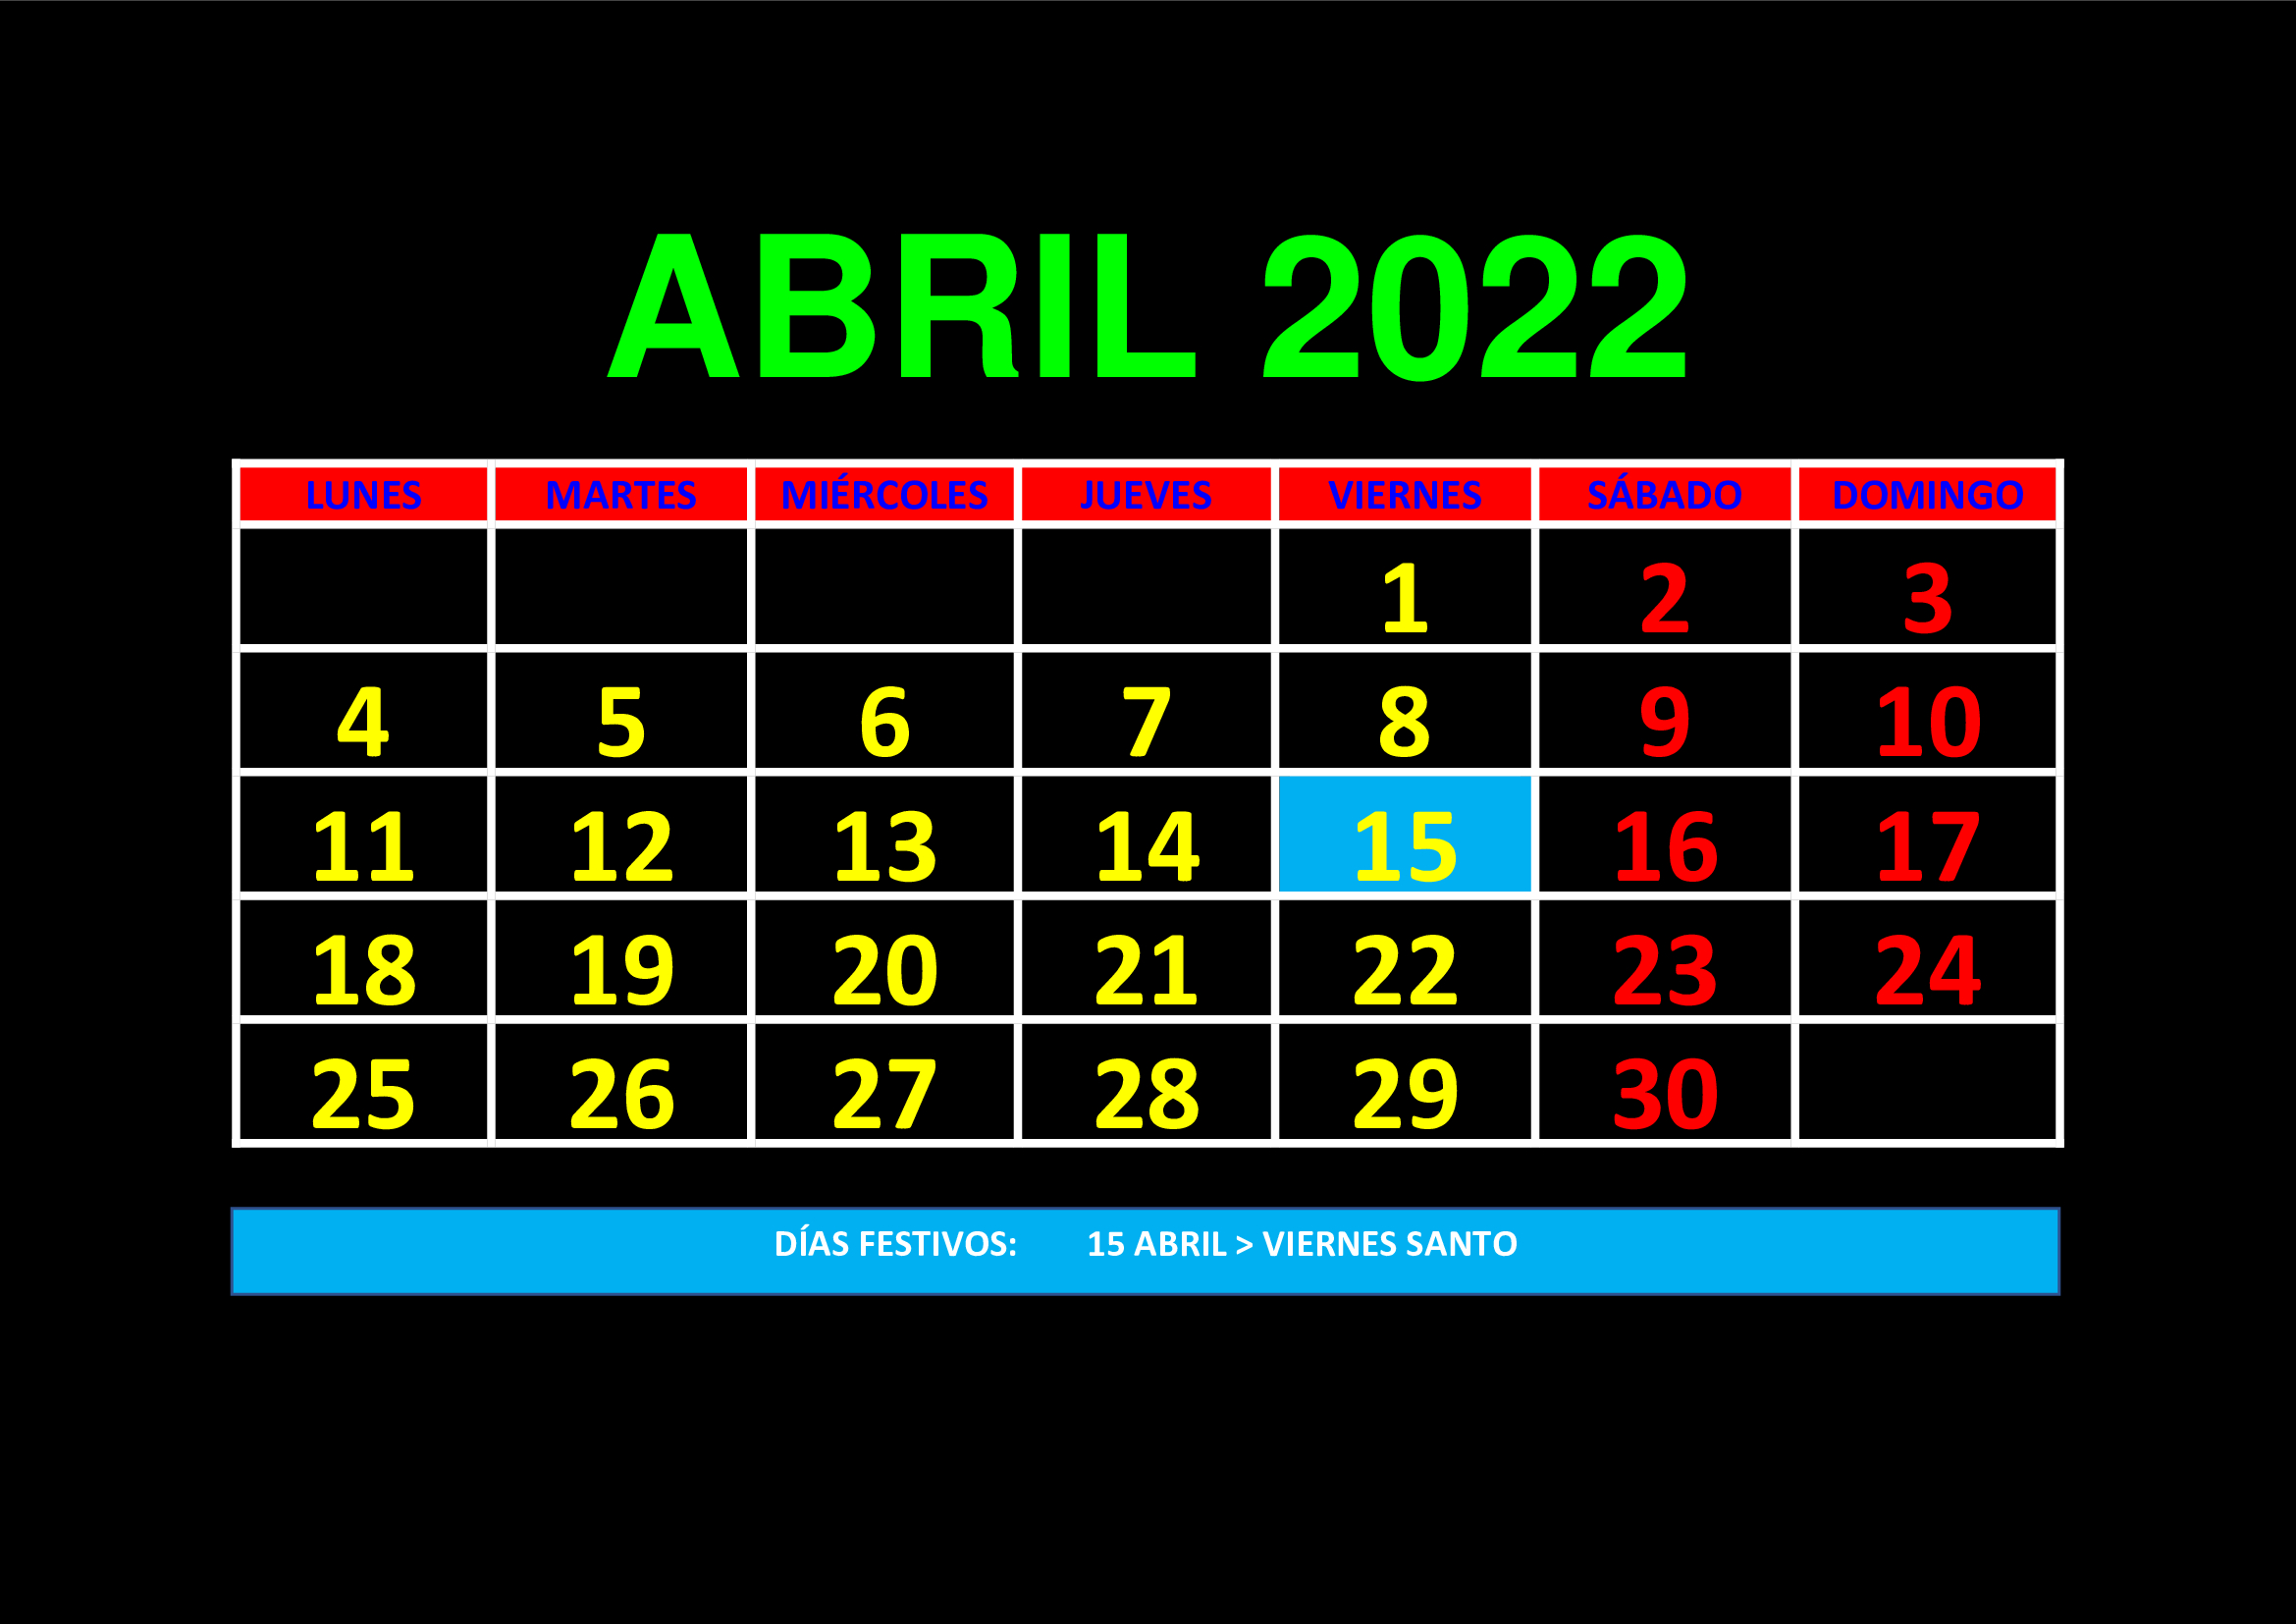 La imagen muestra el mes de abril de 2022